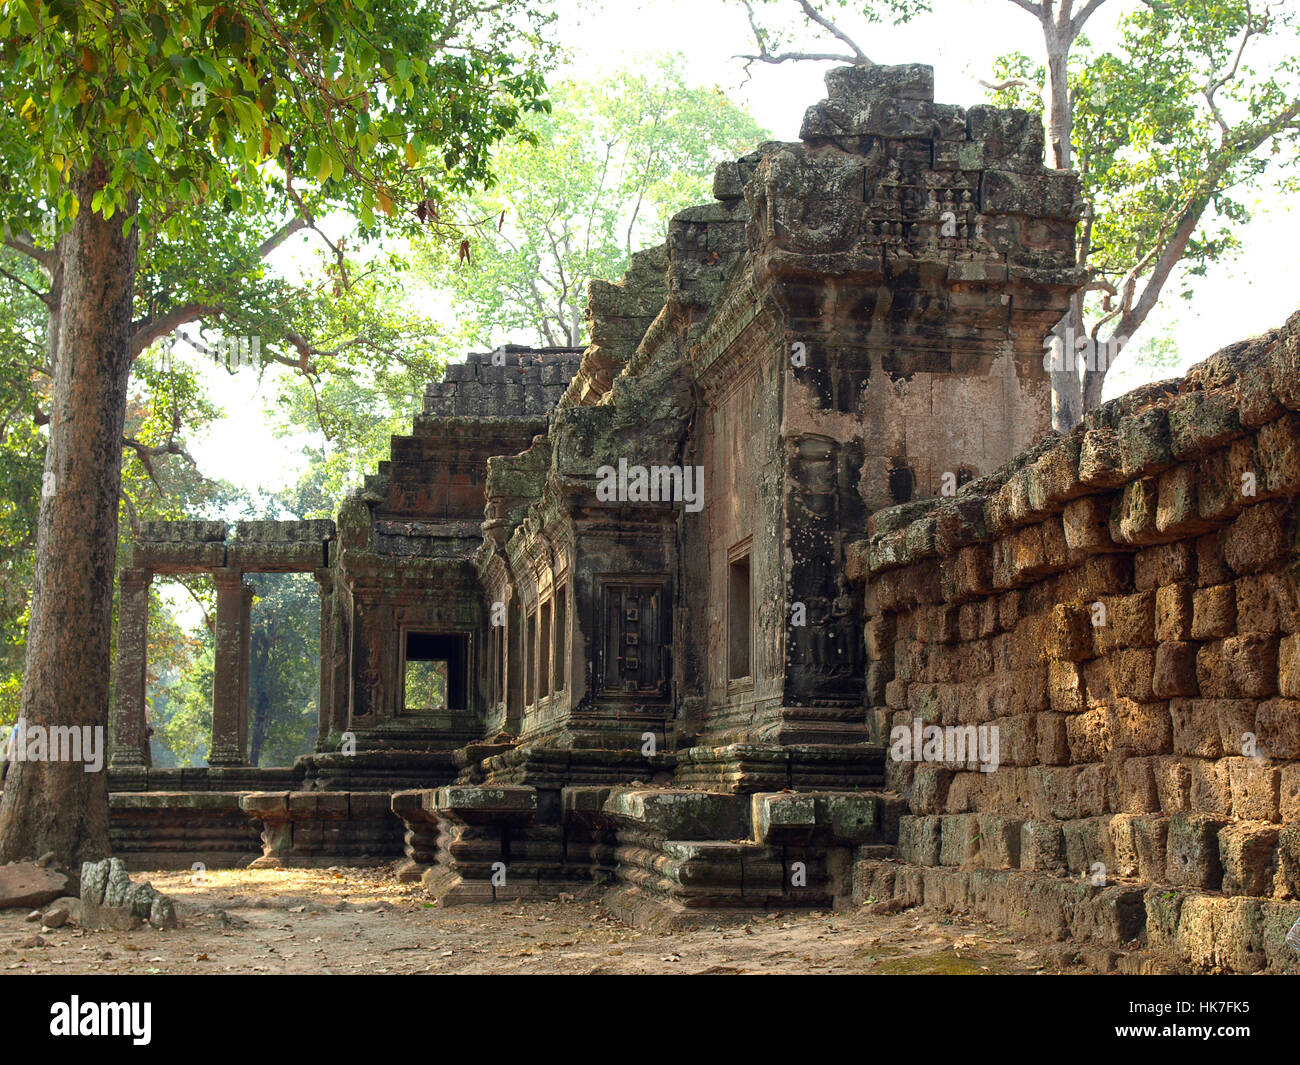 Türme mit Gesichtern in Angkor Wat Tempelanlage in Kambodscha und das größte religiöse Bauwerk der Welt. UNESCO-Weltkulturerbe. Stockfoto